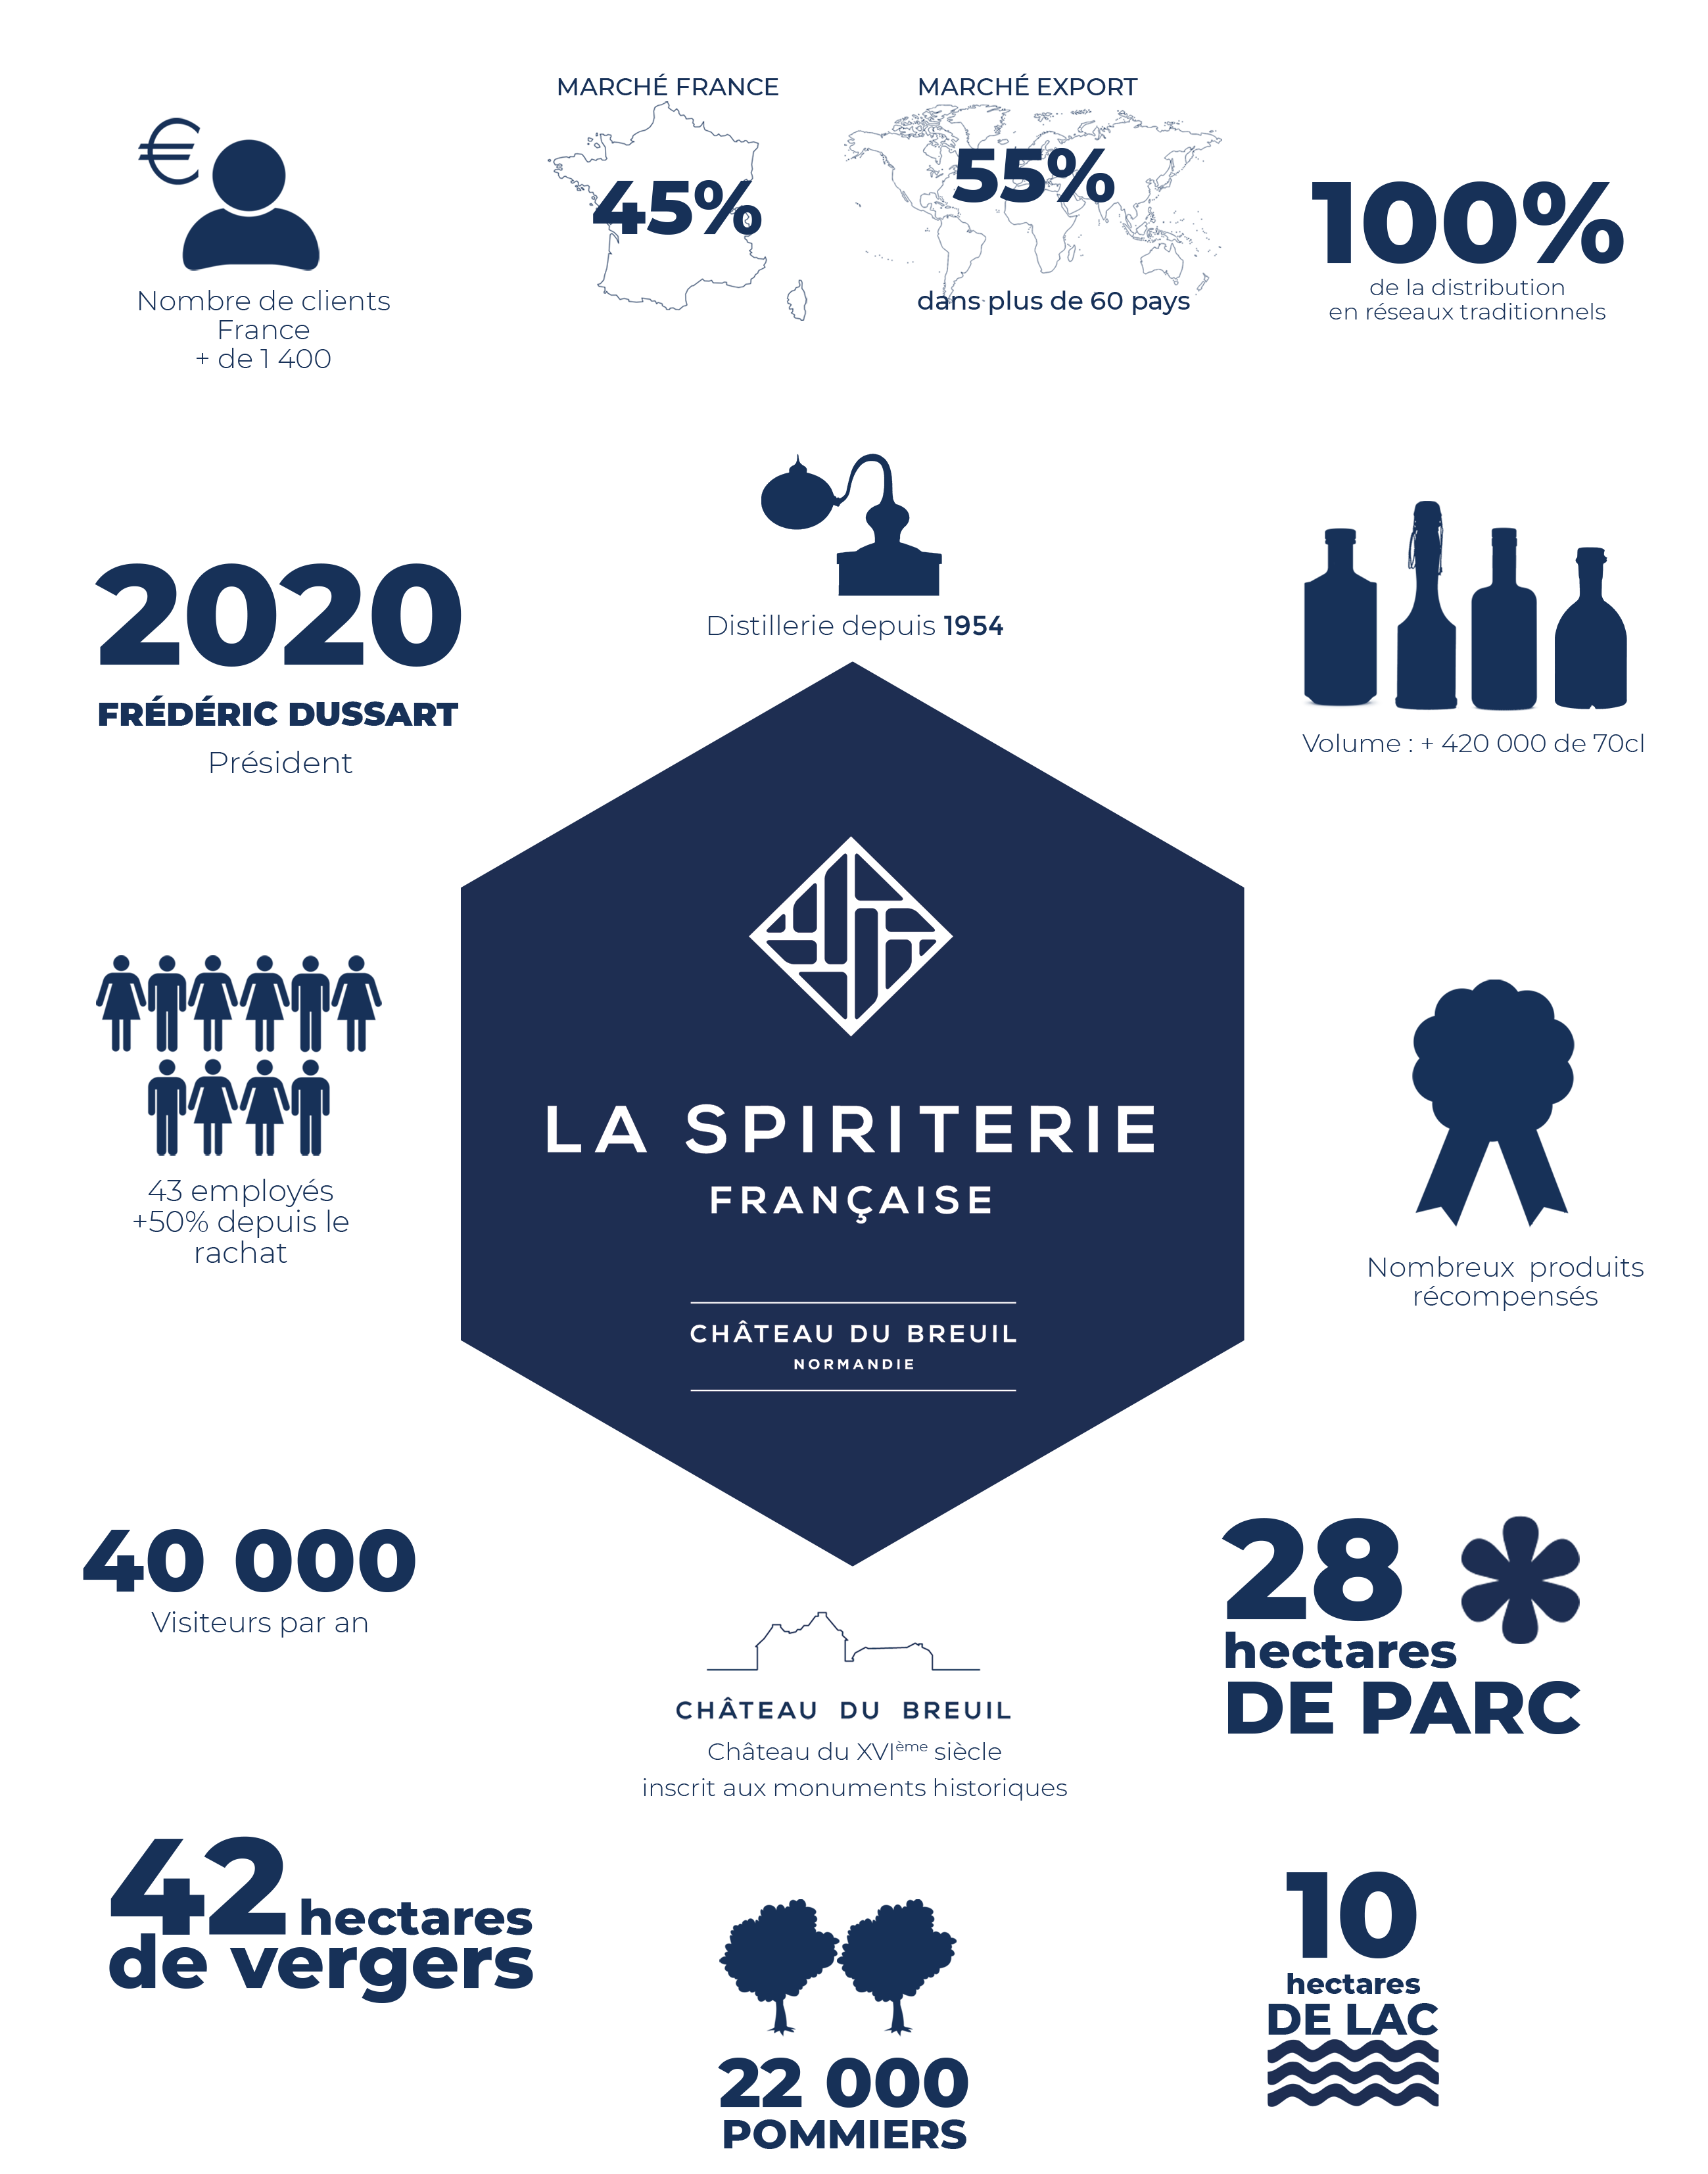 Graphic Design La Spiriterie Française in numbers